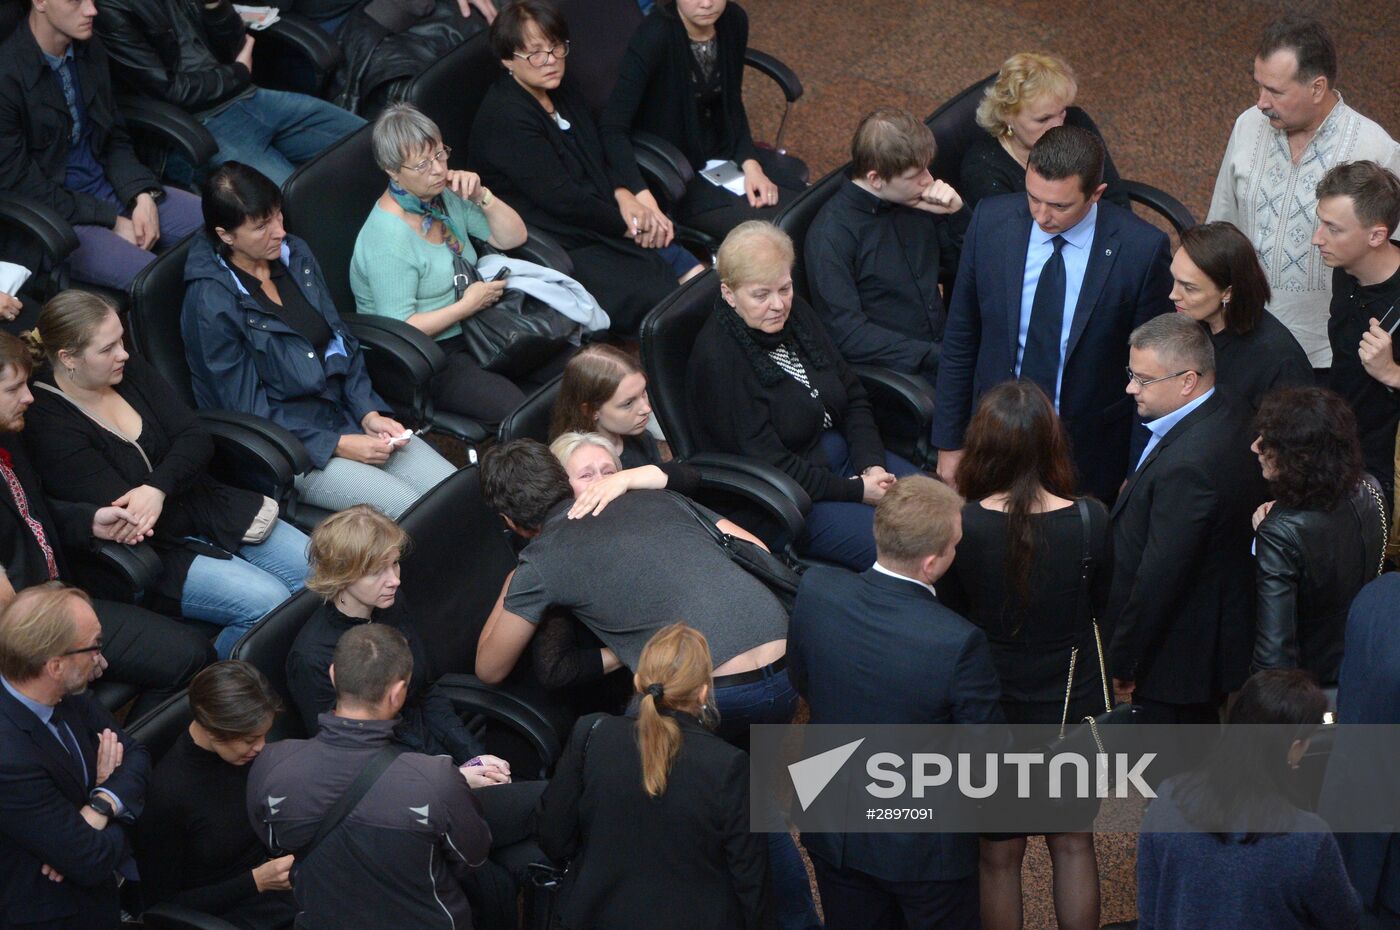 Pavel Sheremet memorial ceremony in Kiev